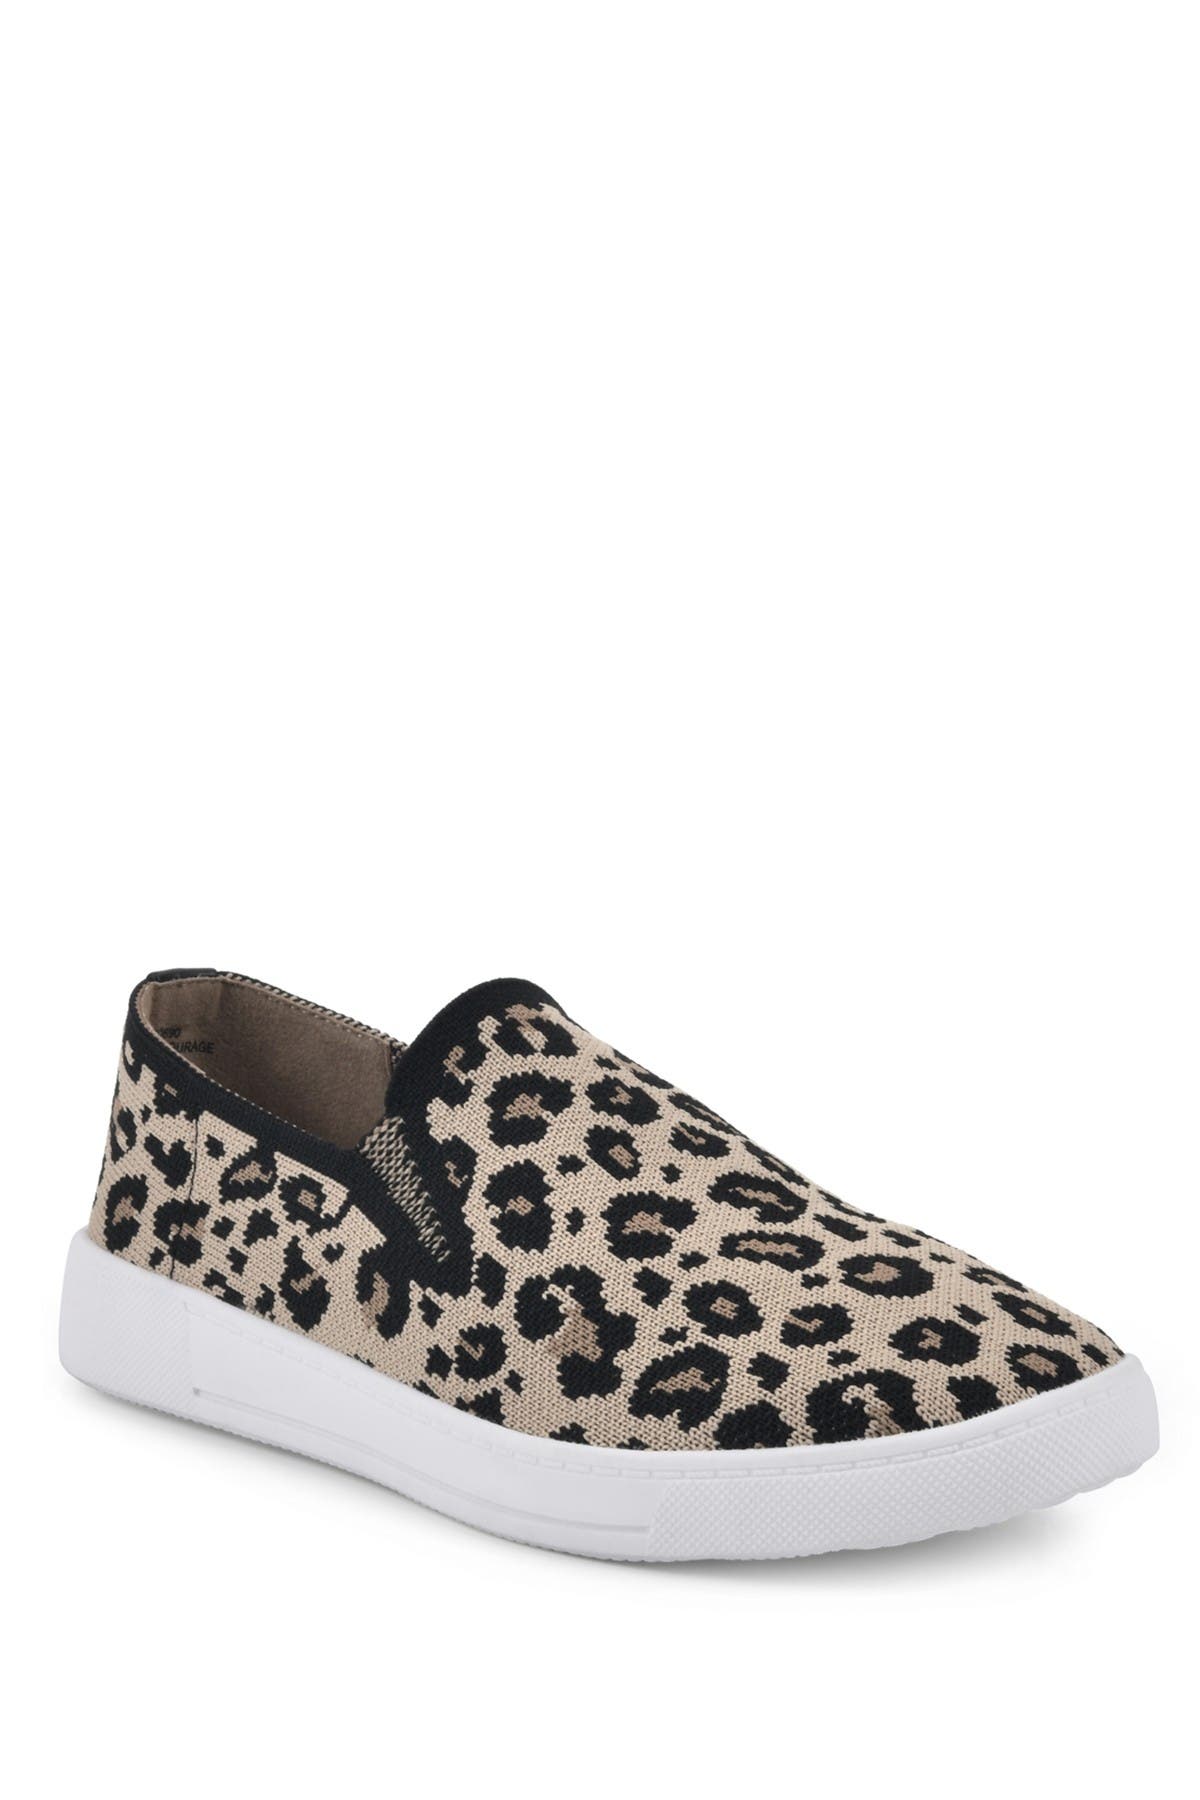 White Mountain Footwear Courage Slip-on Sneaker In Leopard/fabric